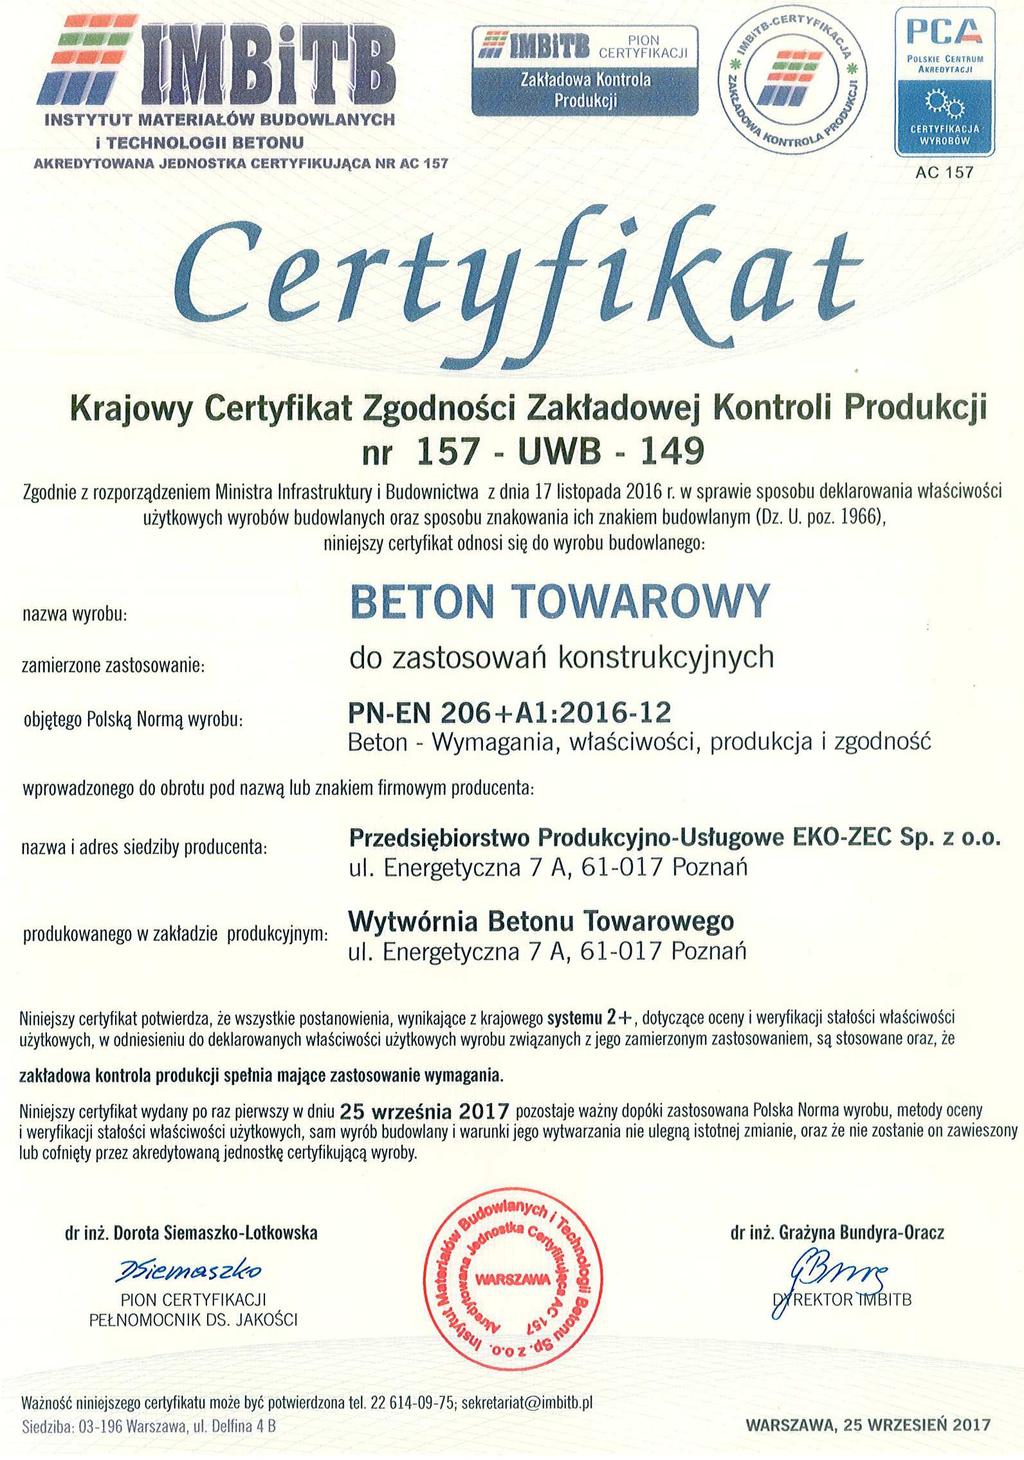 REFERATY Producent deklarując zgodność z dokumentem odniesienia będzie musiał posługiwać się specyfikacją techniczną (Polską Normą wyrobu) nie mającą statusu normy wycofanej, co będzie miało wpływ na